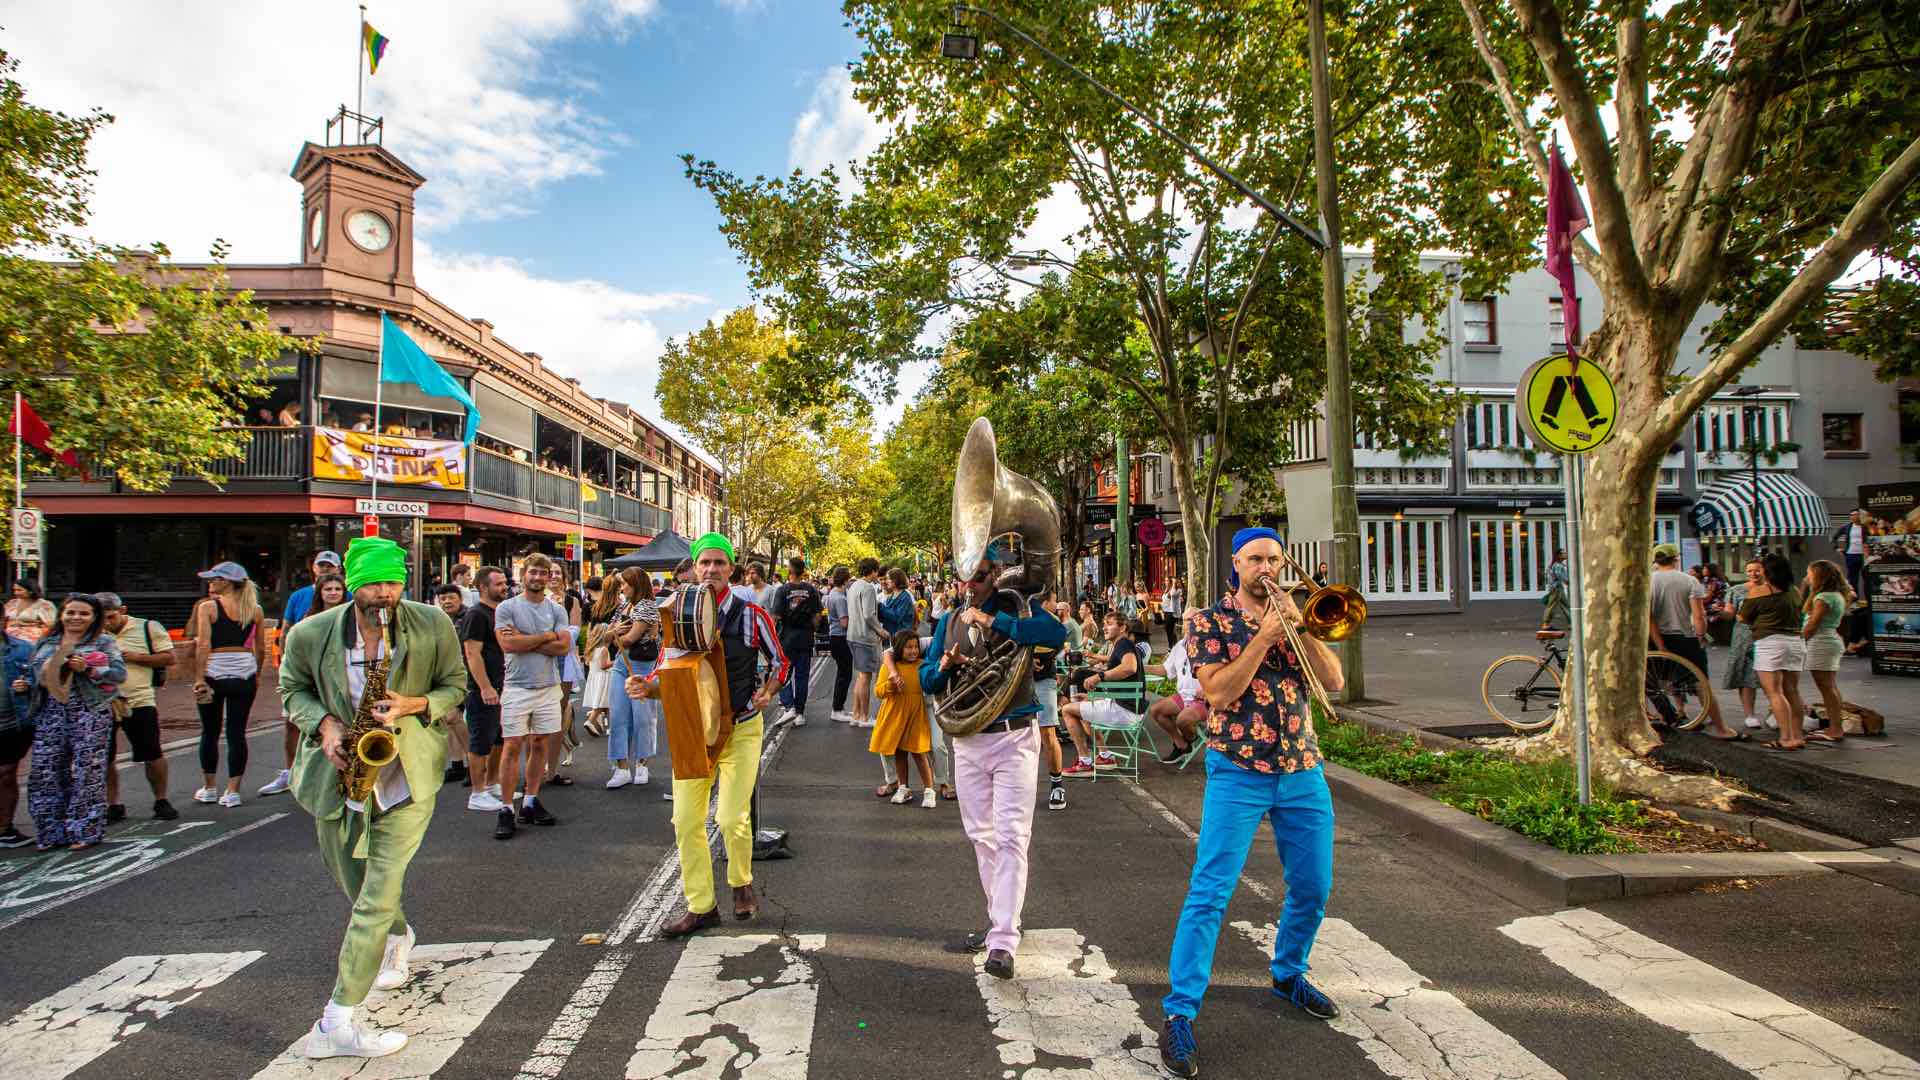 “Le strade di Sydney” occuperanno sette quartieri del centro città questa primavera con festeggiamenti gratuiti di un giorno